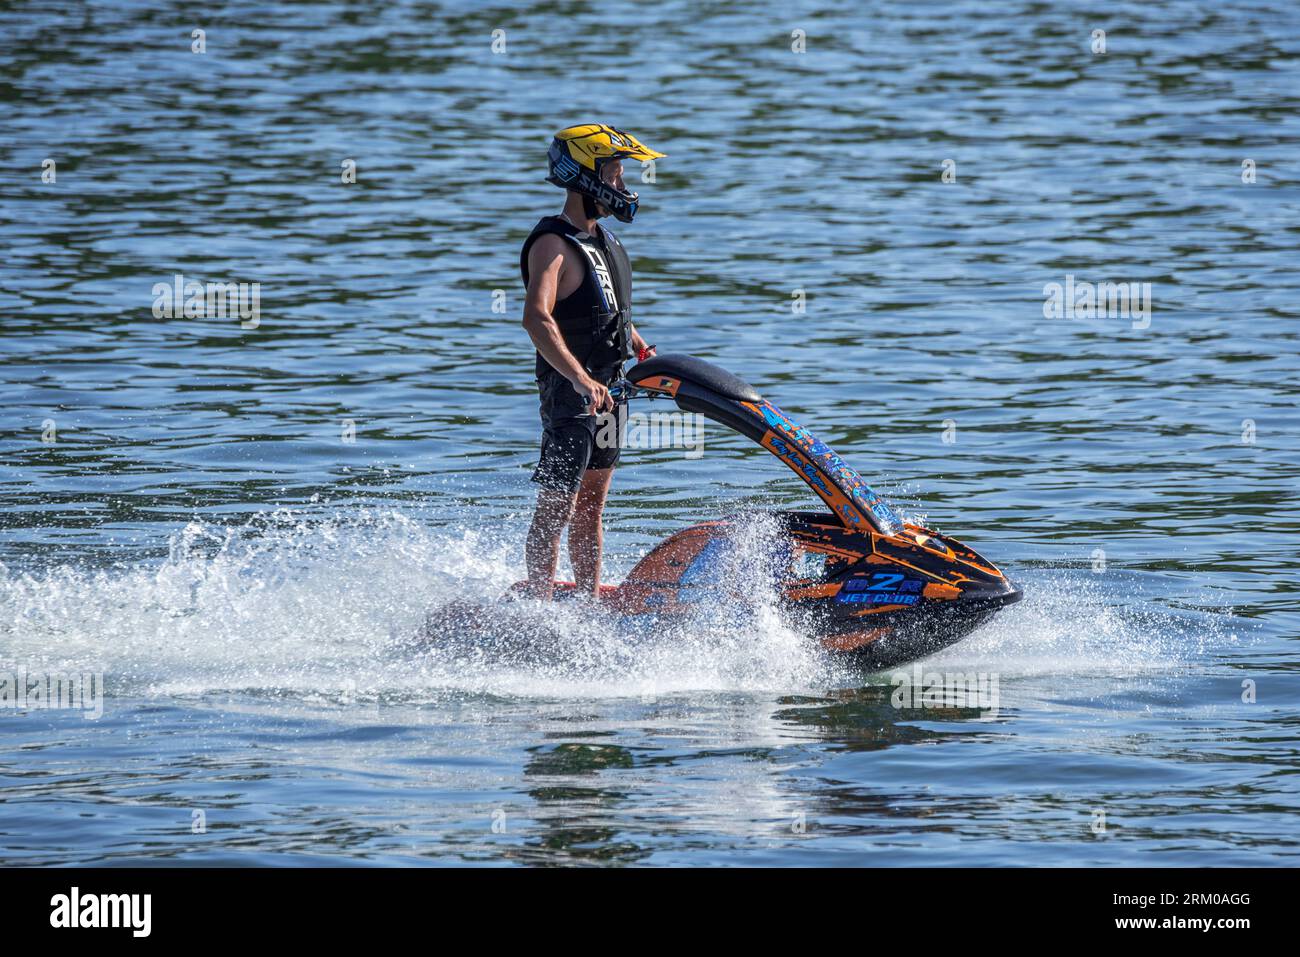 Jet skier riding jet ski / jetski / water scooter / stand-up personal watercraft / PWC on lake Stock Photo